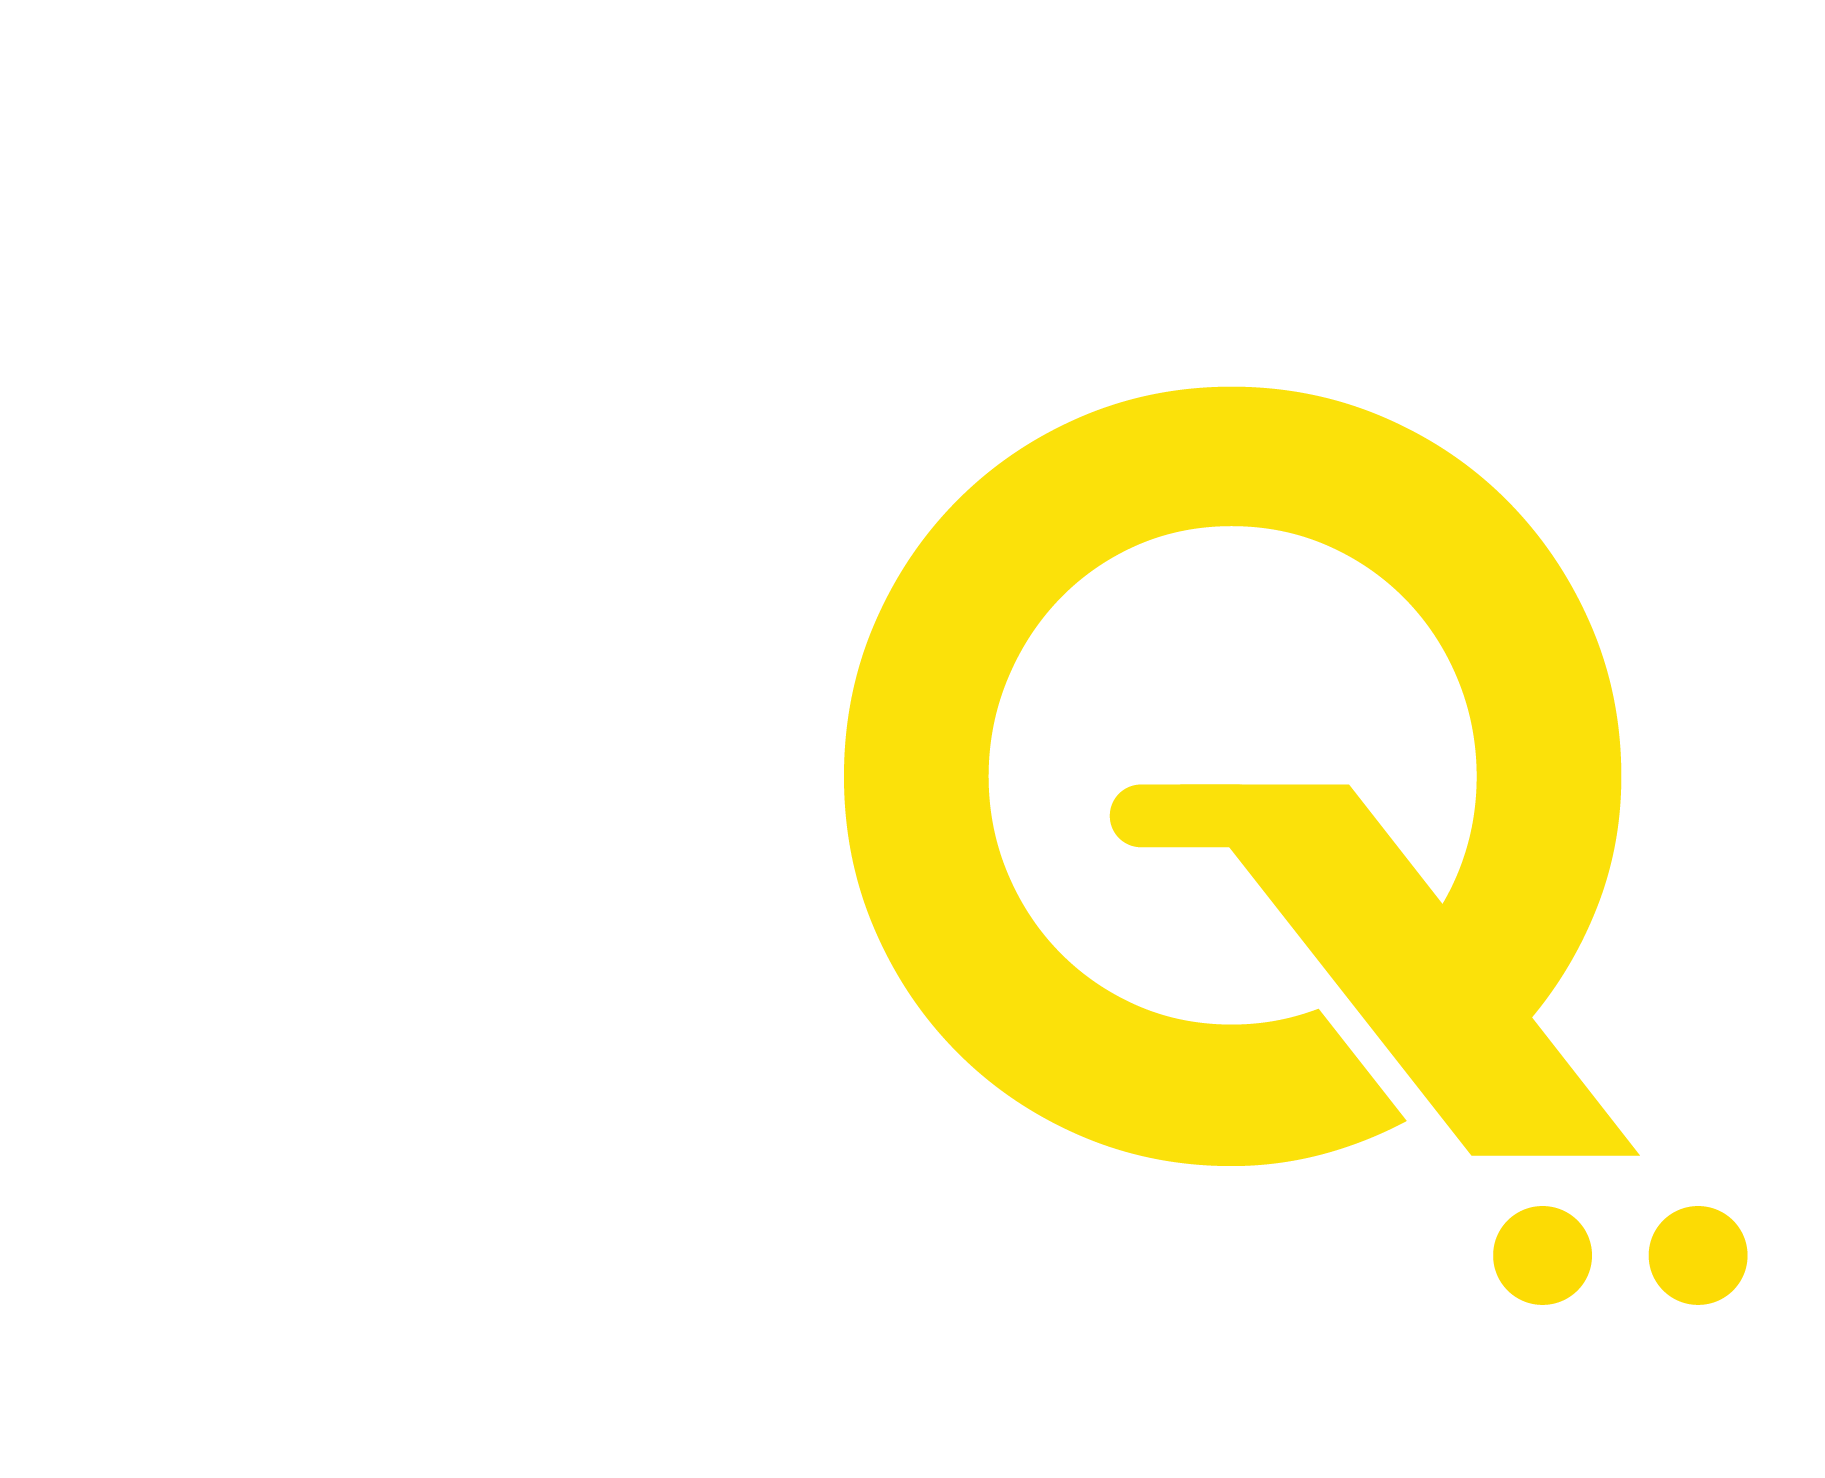 DQcart